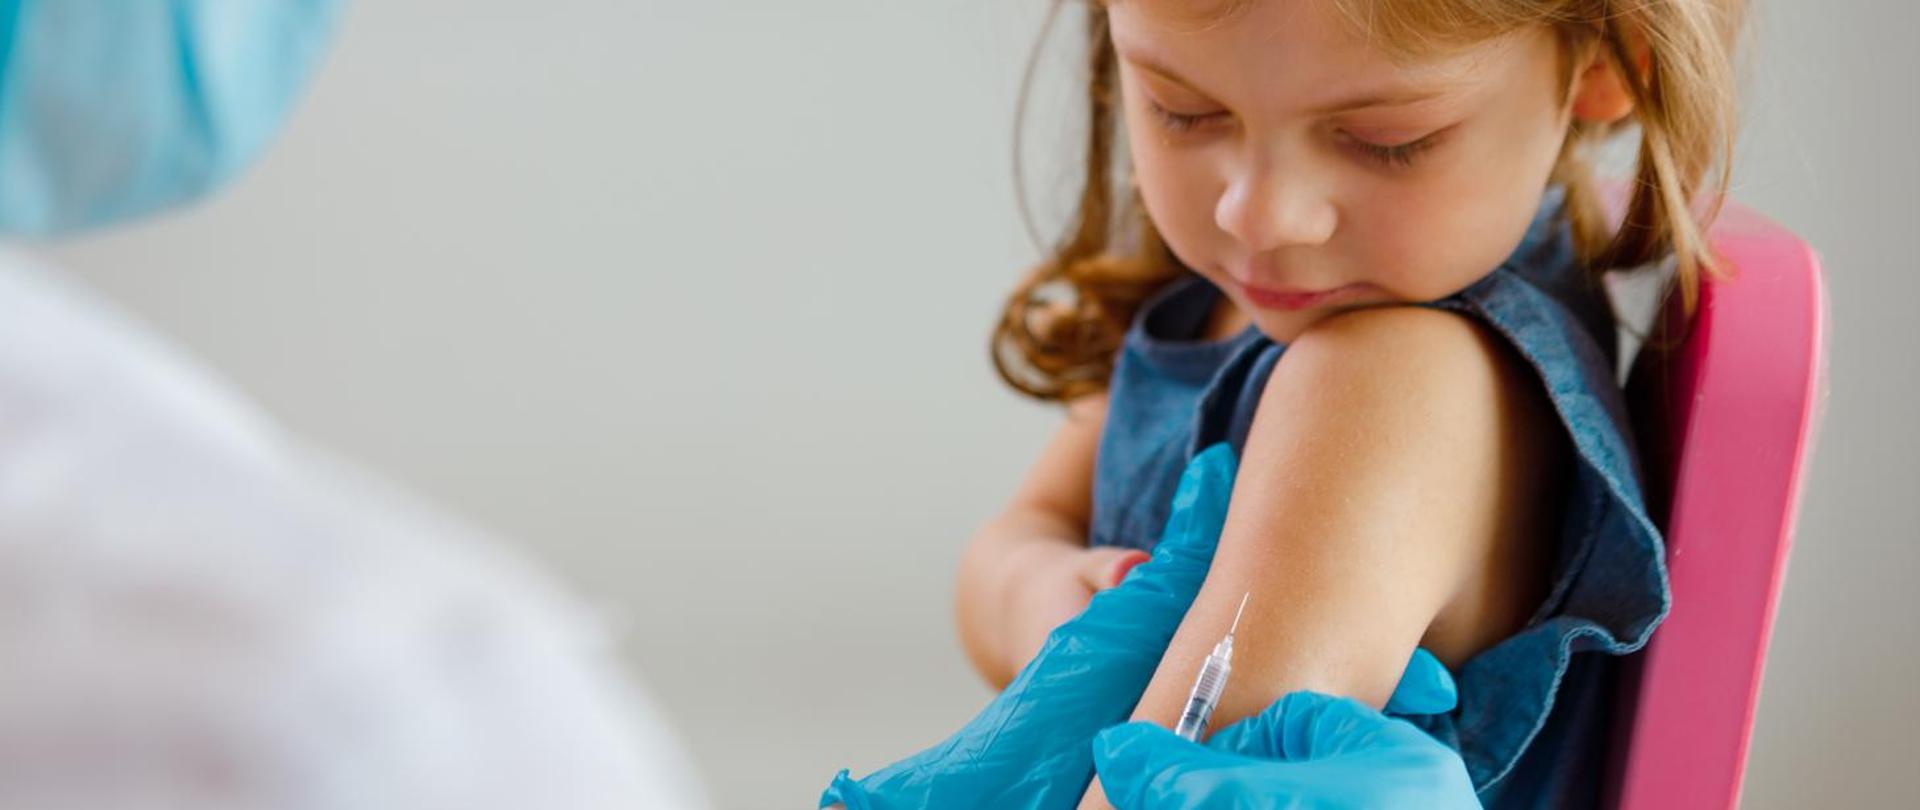 Zdjęcia przedstawia dziewczynkę której podawana jest szczepionka w lewę ramie. 